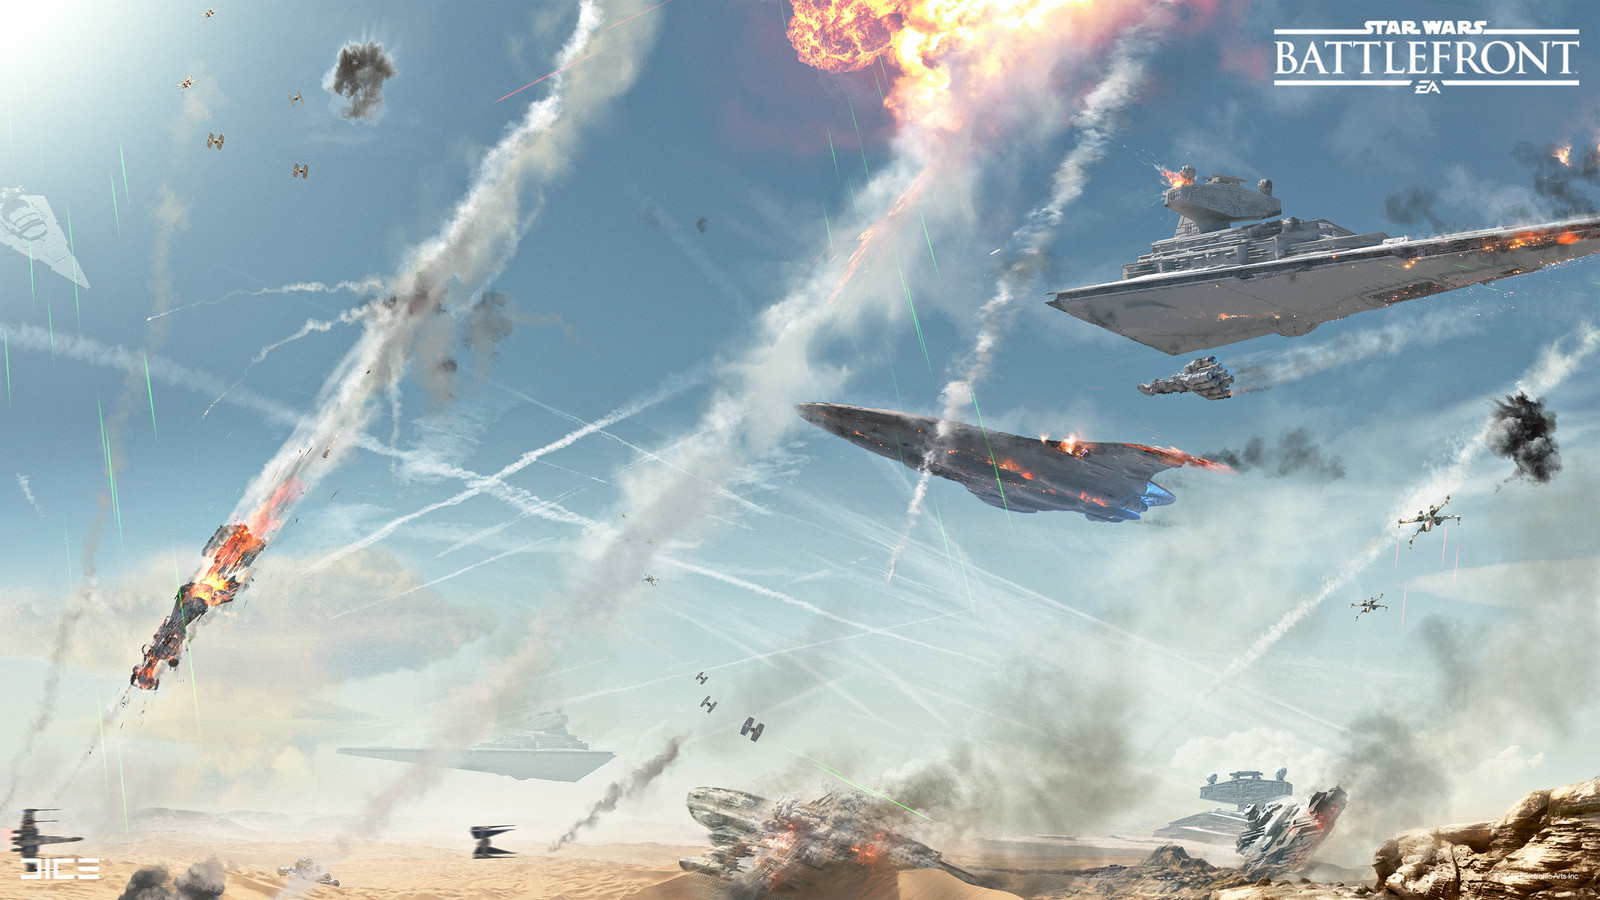 Jakku Sky Concept Art for the 2015 Star Wars Battlefront game. (2015)